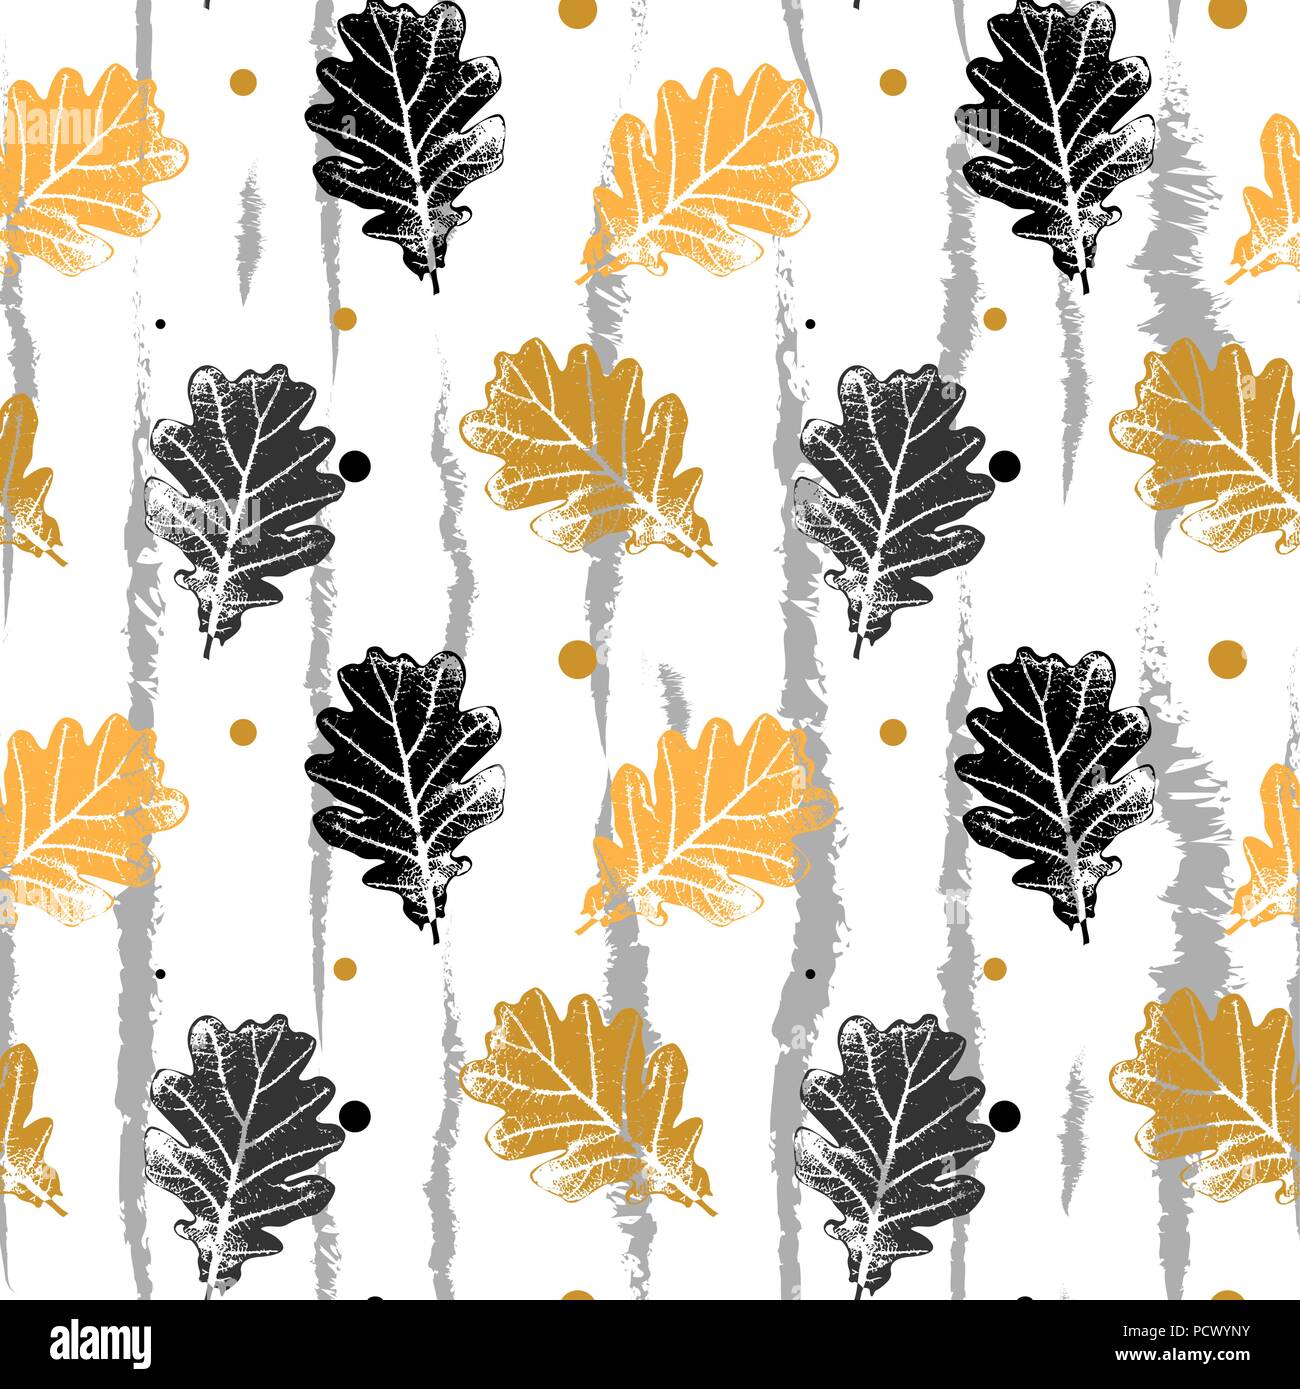 Die nahtlose Vektor Muster mit Eichenlaub, Orang und Black oak leaf pattern Stock Vektor